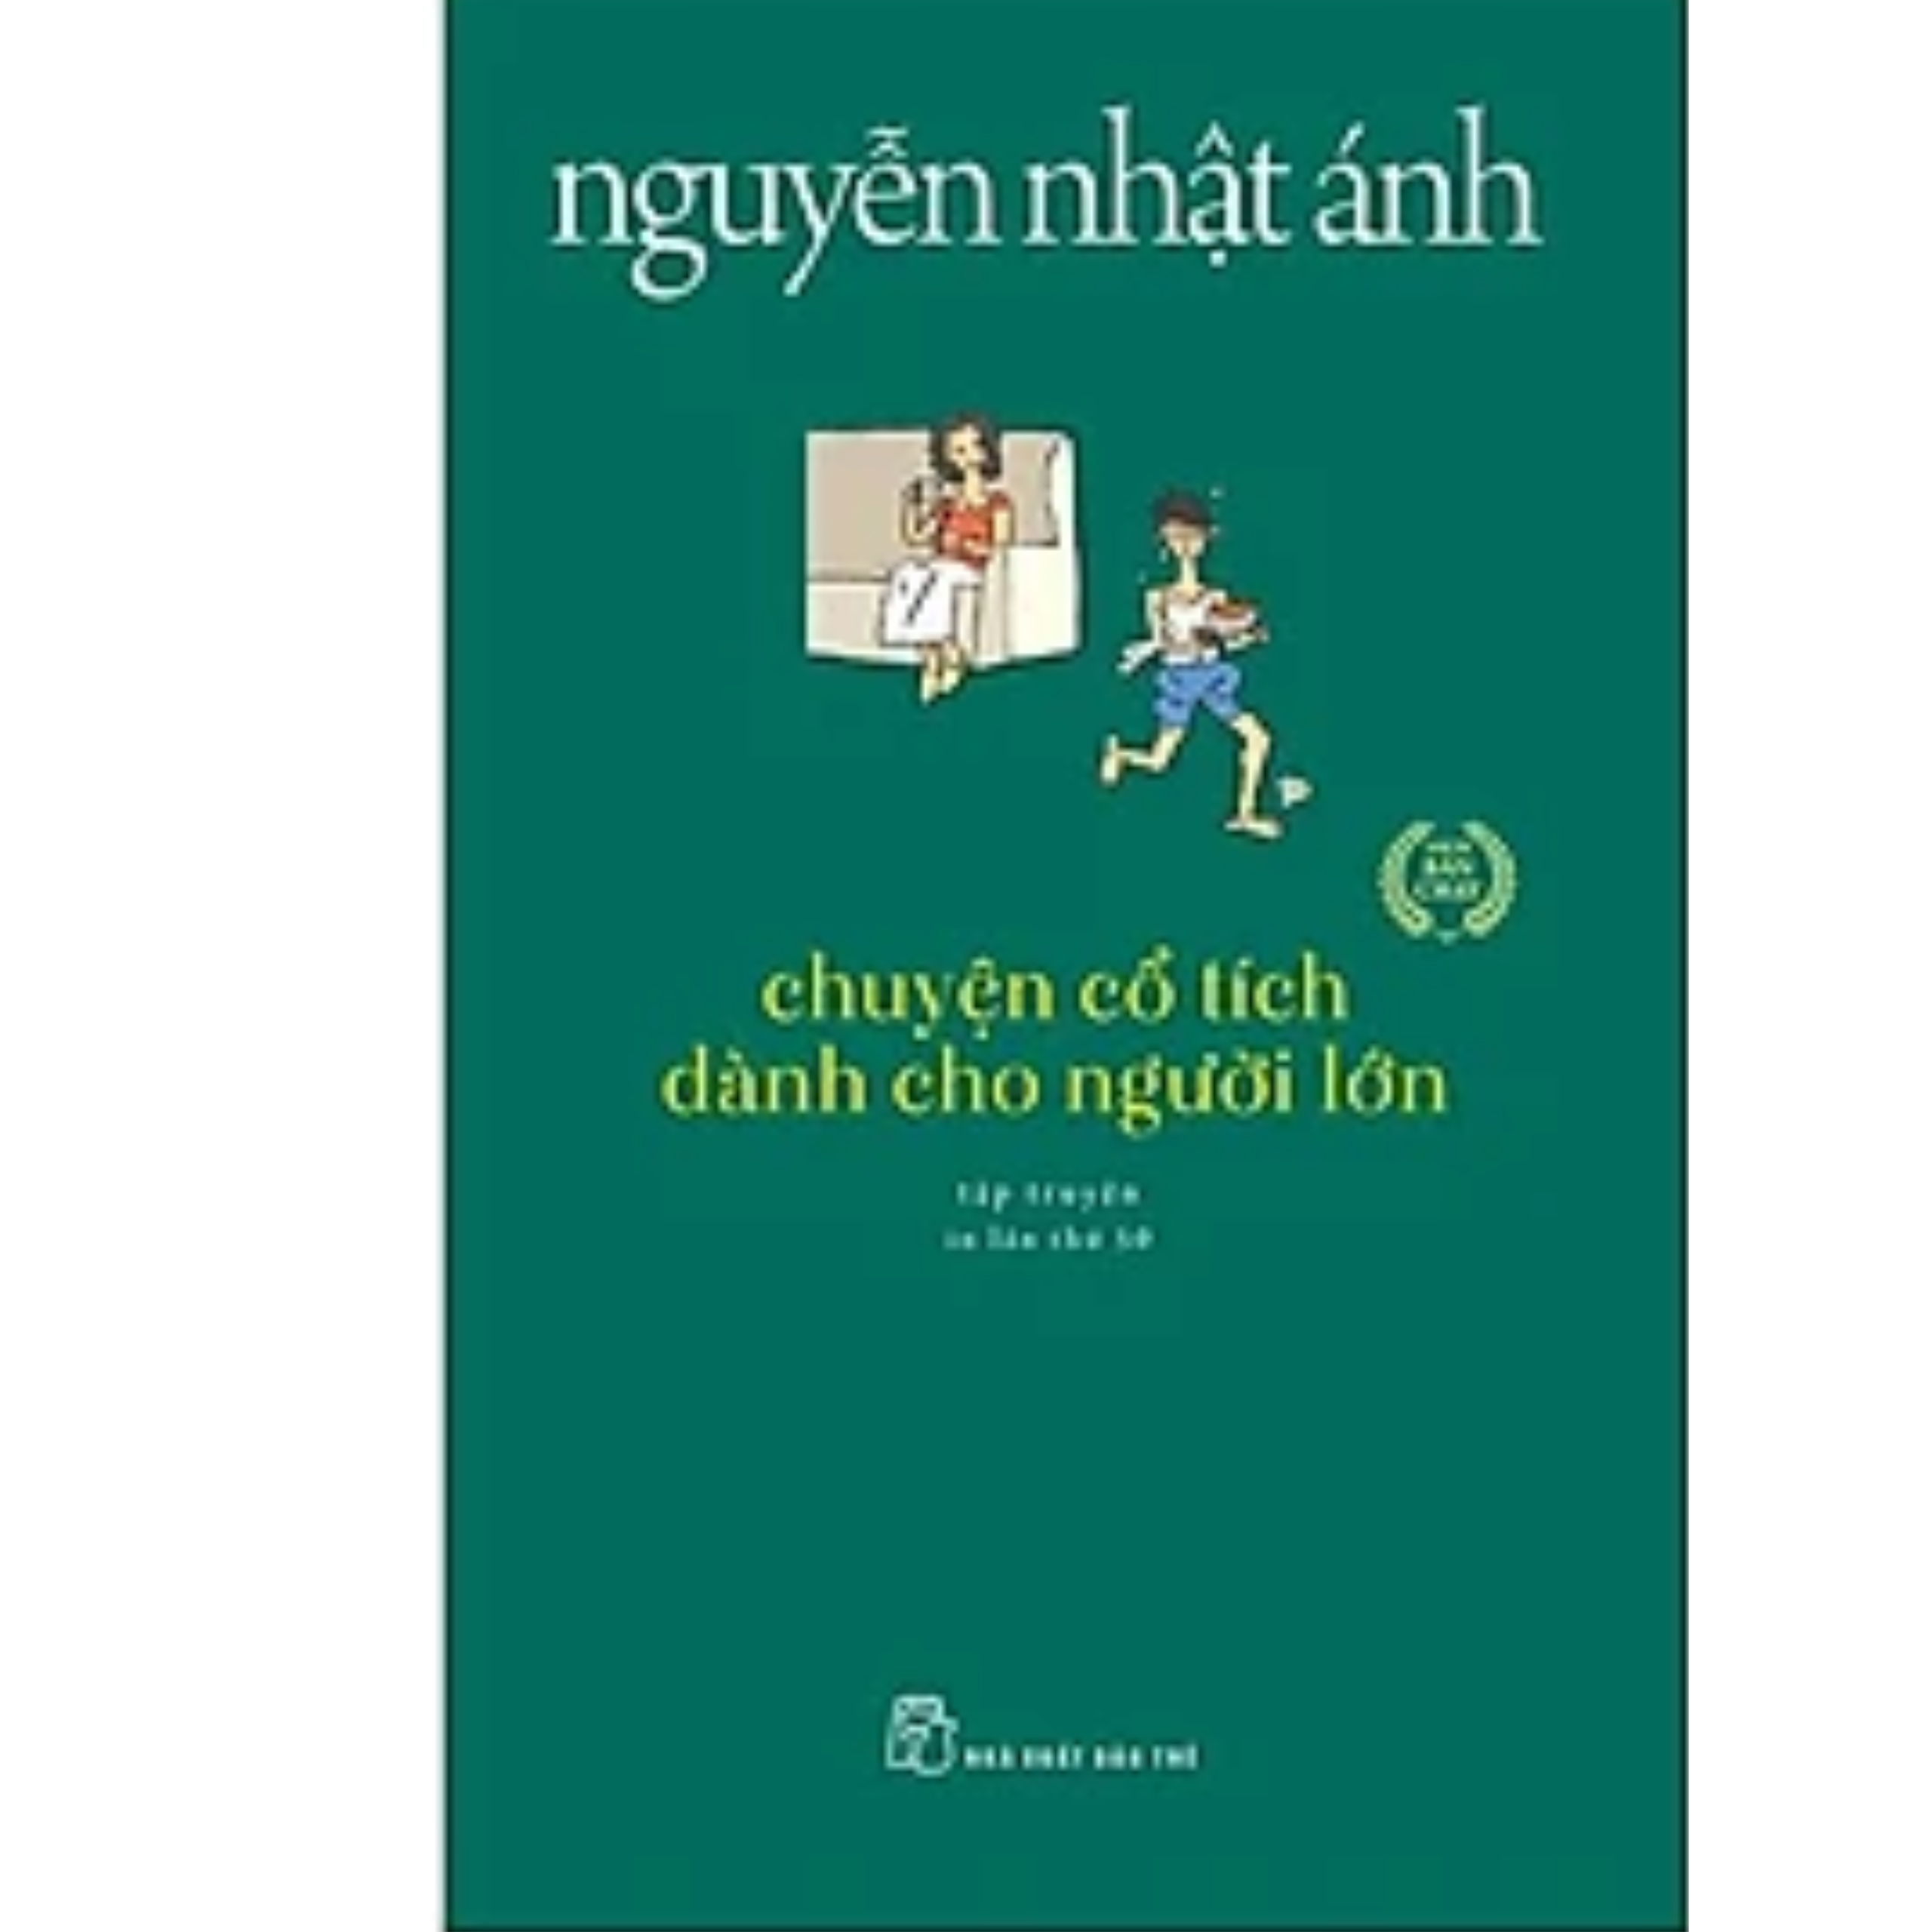 Combo Sách Chọn Lọc Của Nguyễn Nhật Ánh: Chuyện Cổ Tích Dành Cho Người Lớn + Đảo Mộng Mơ (Tặng Kèm Bookmark Green Life)